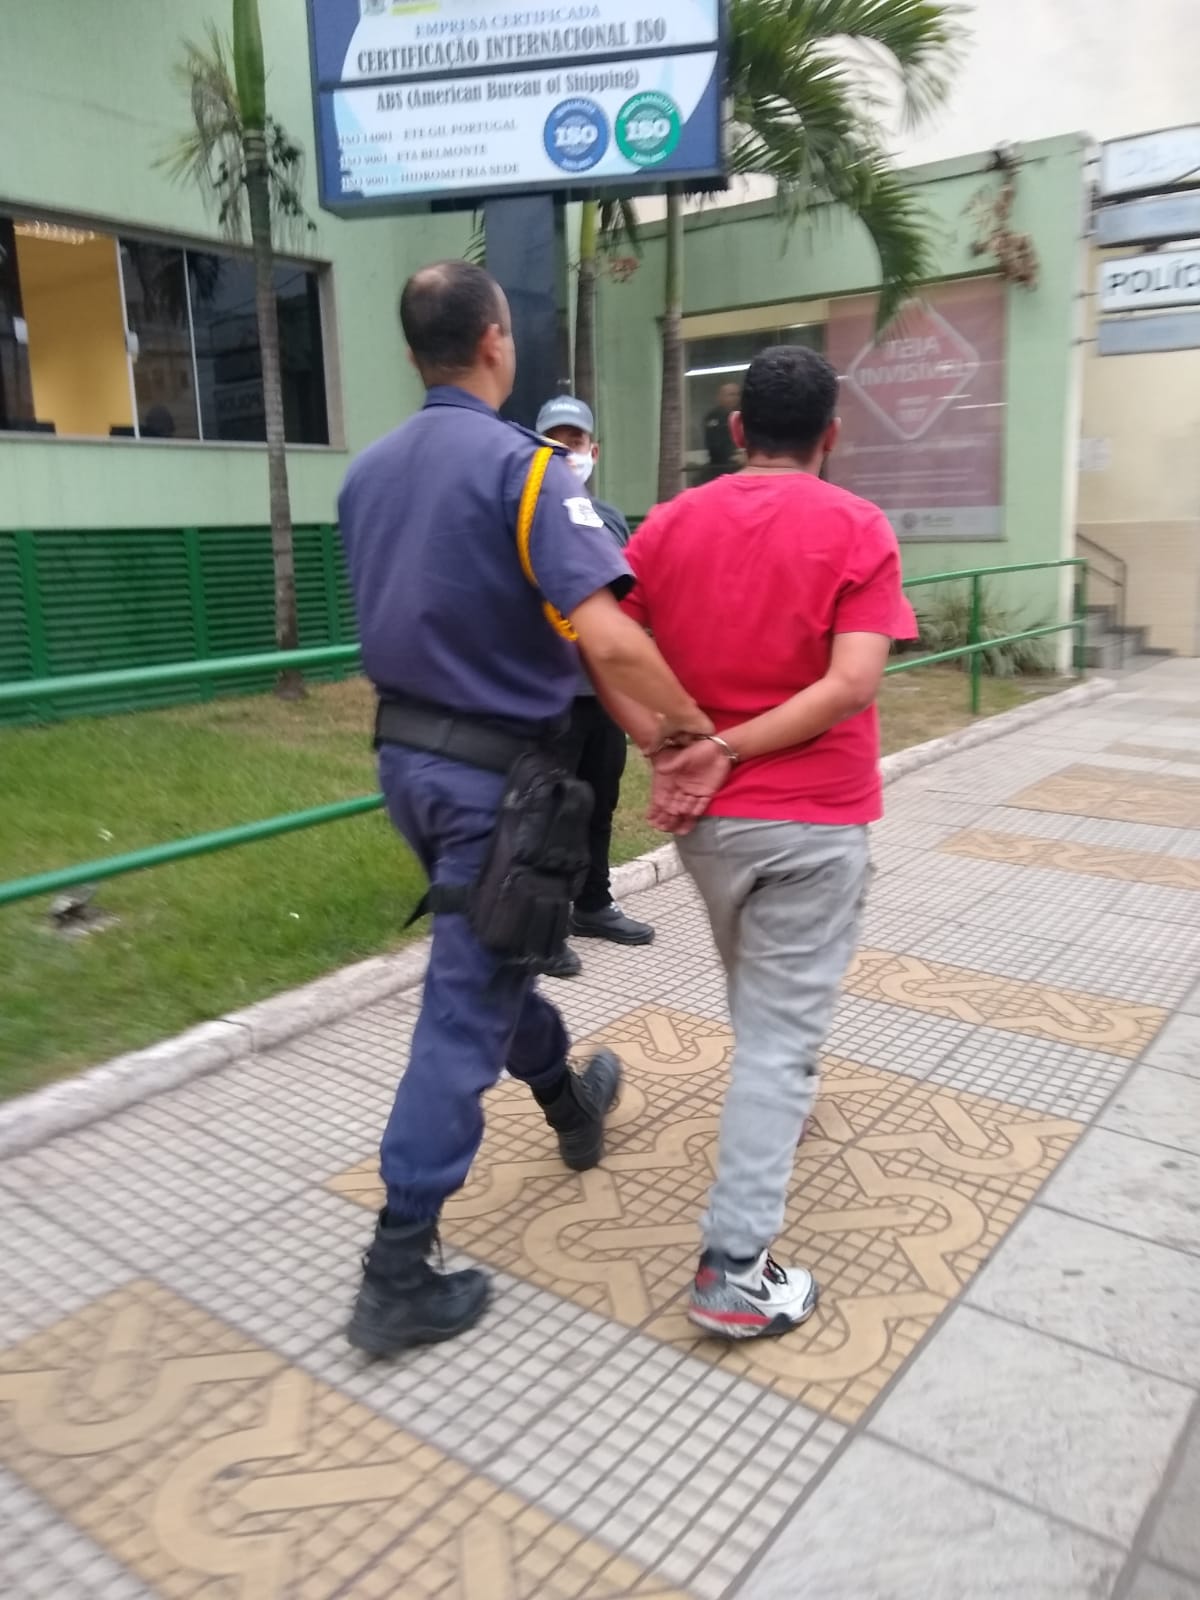 Em Volta Redonda, homem é detido pela Guarda Municipal após ser denunciado pela tia por ameaças